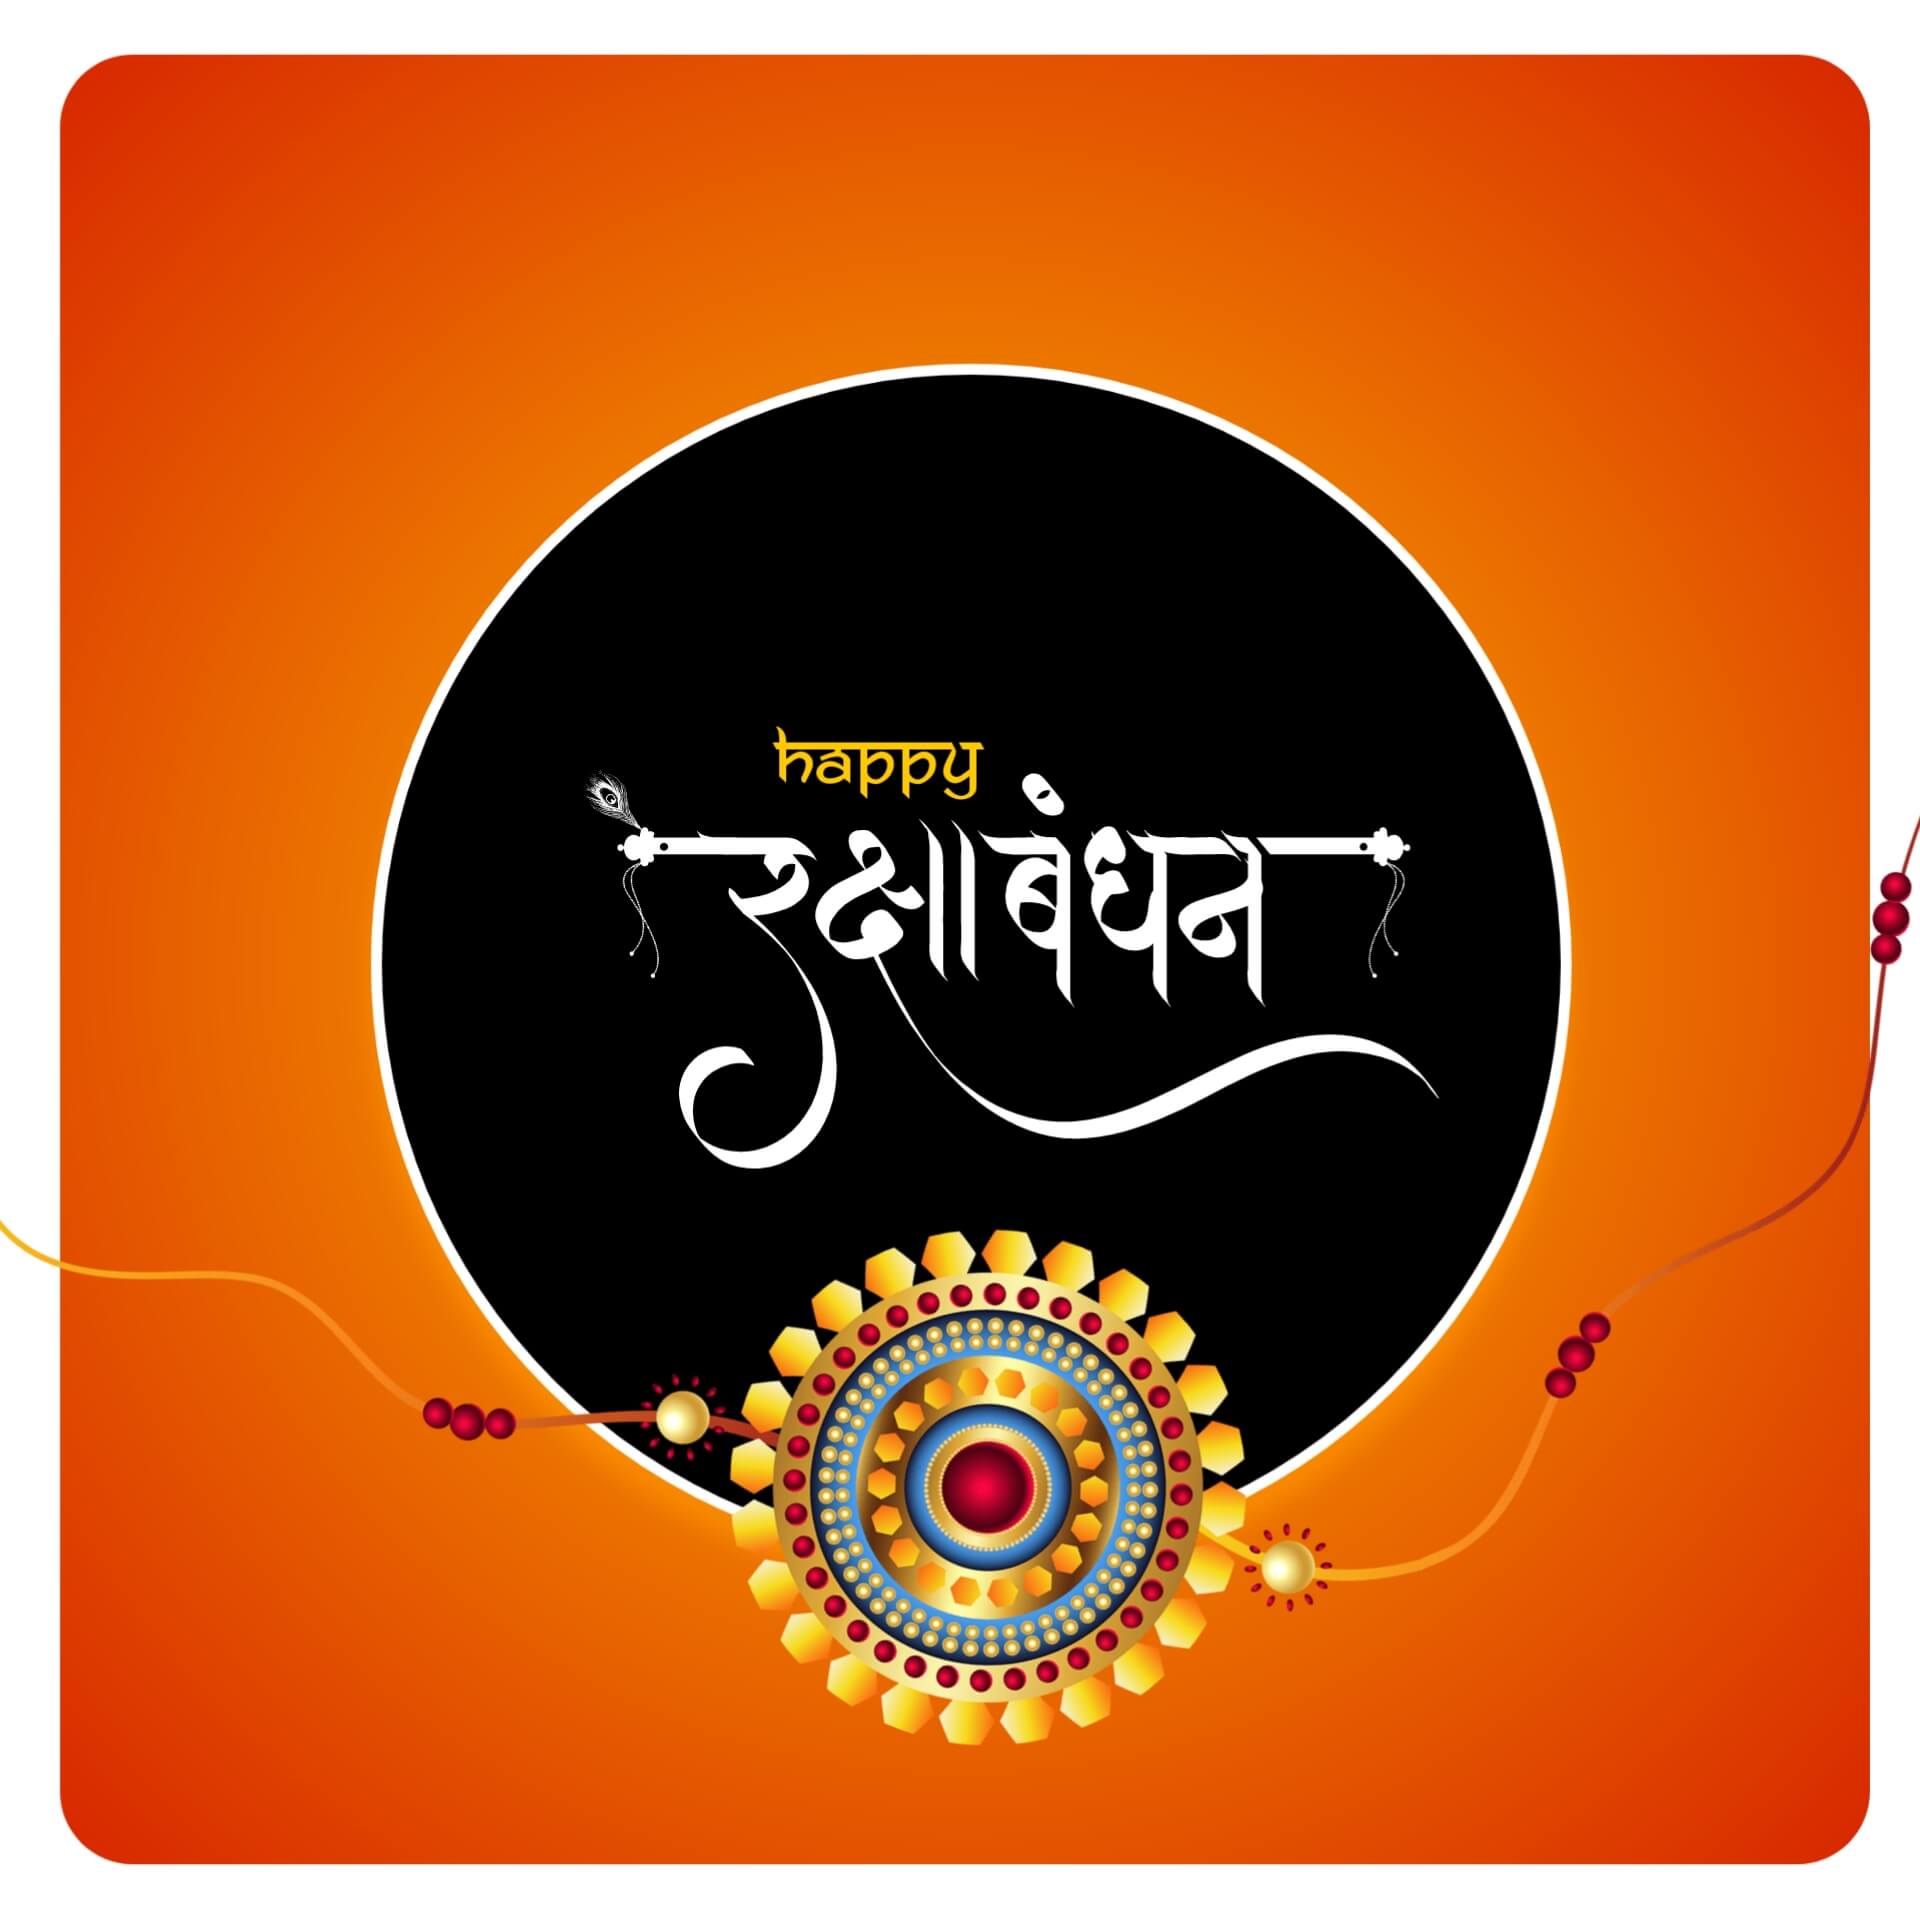 Hindi Raksha Bandhan Image hd Download